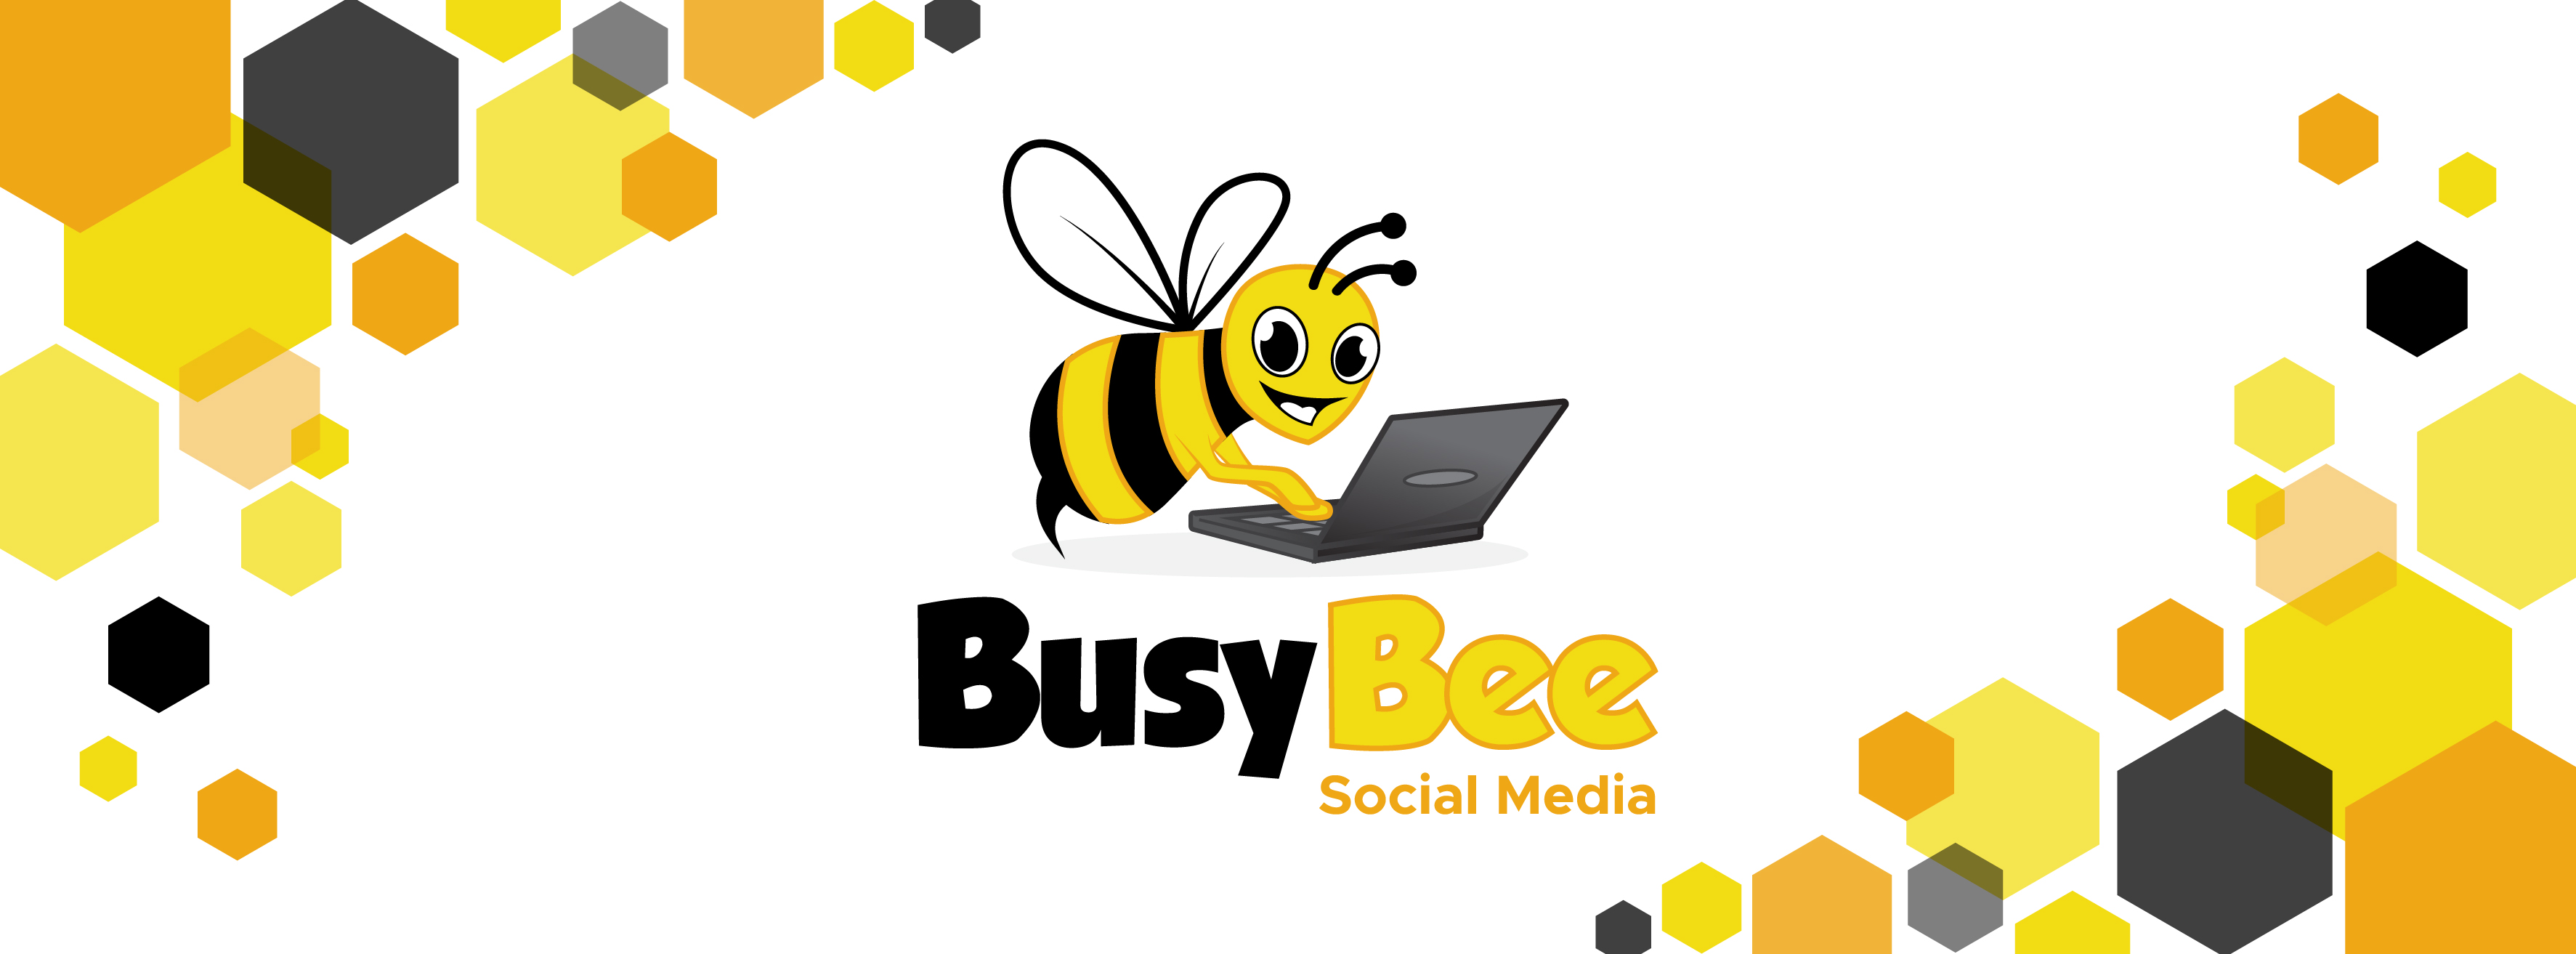 Busybee Social Media – Social Media Management